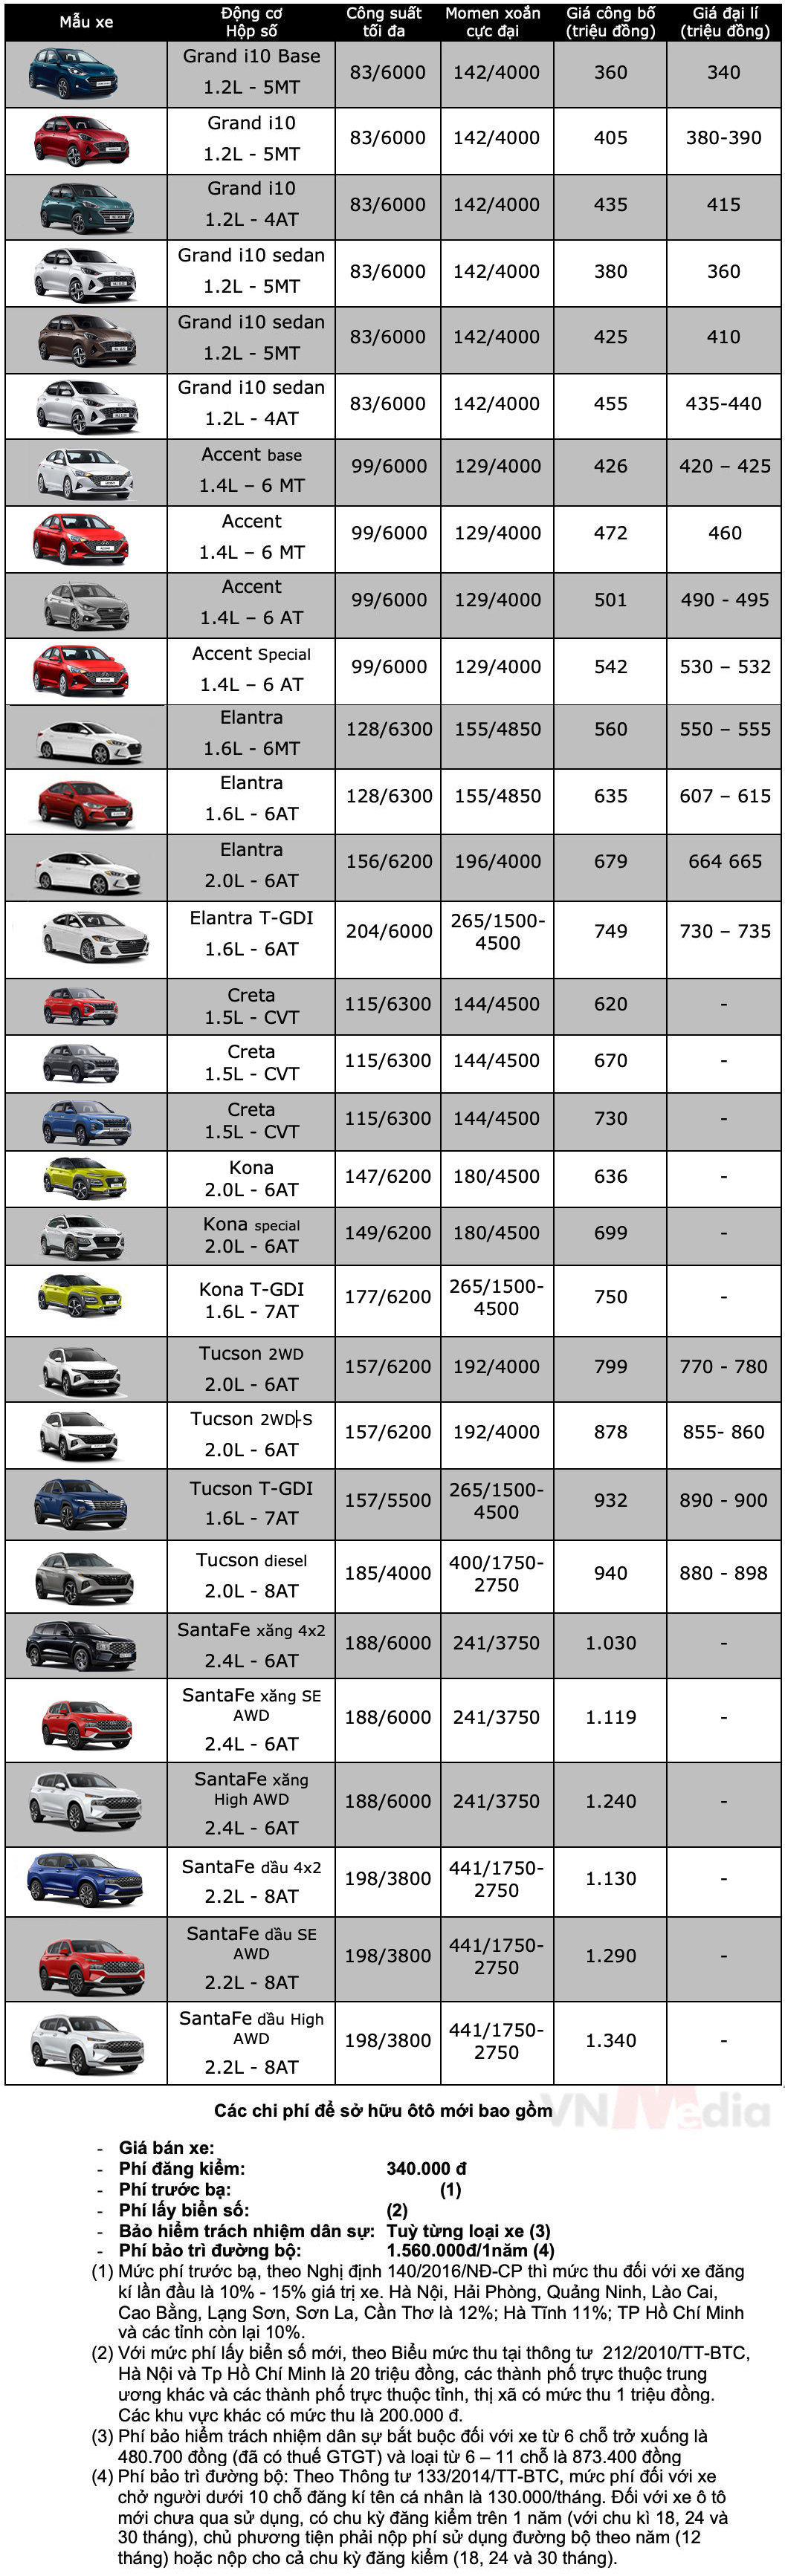 Bảng giá xe Hyundai tháng 8: Hyundai Grand i10 giảm giá 10 triệu đồng - ảnh 4